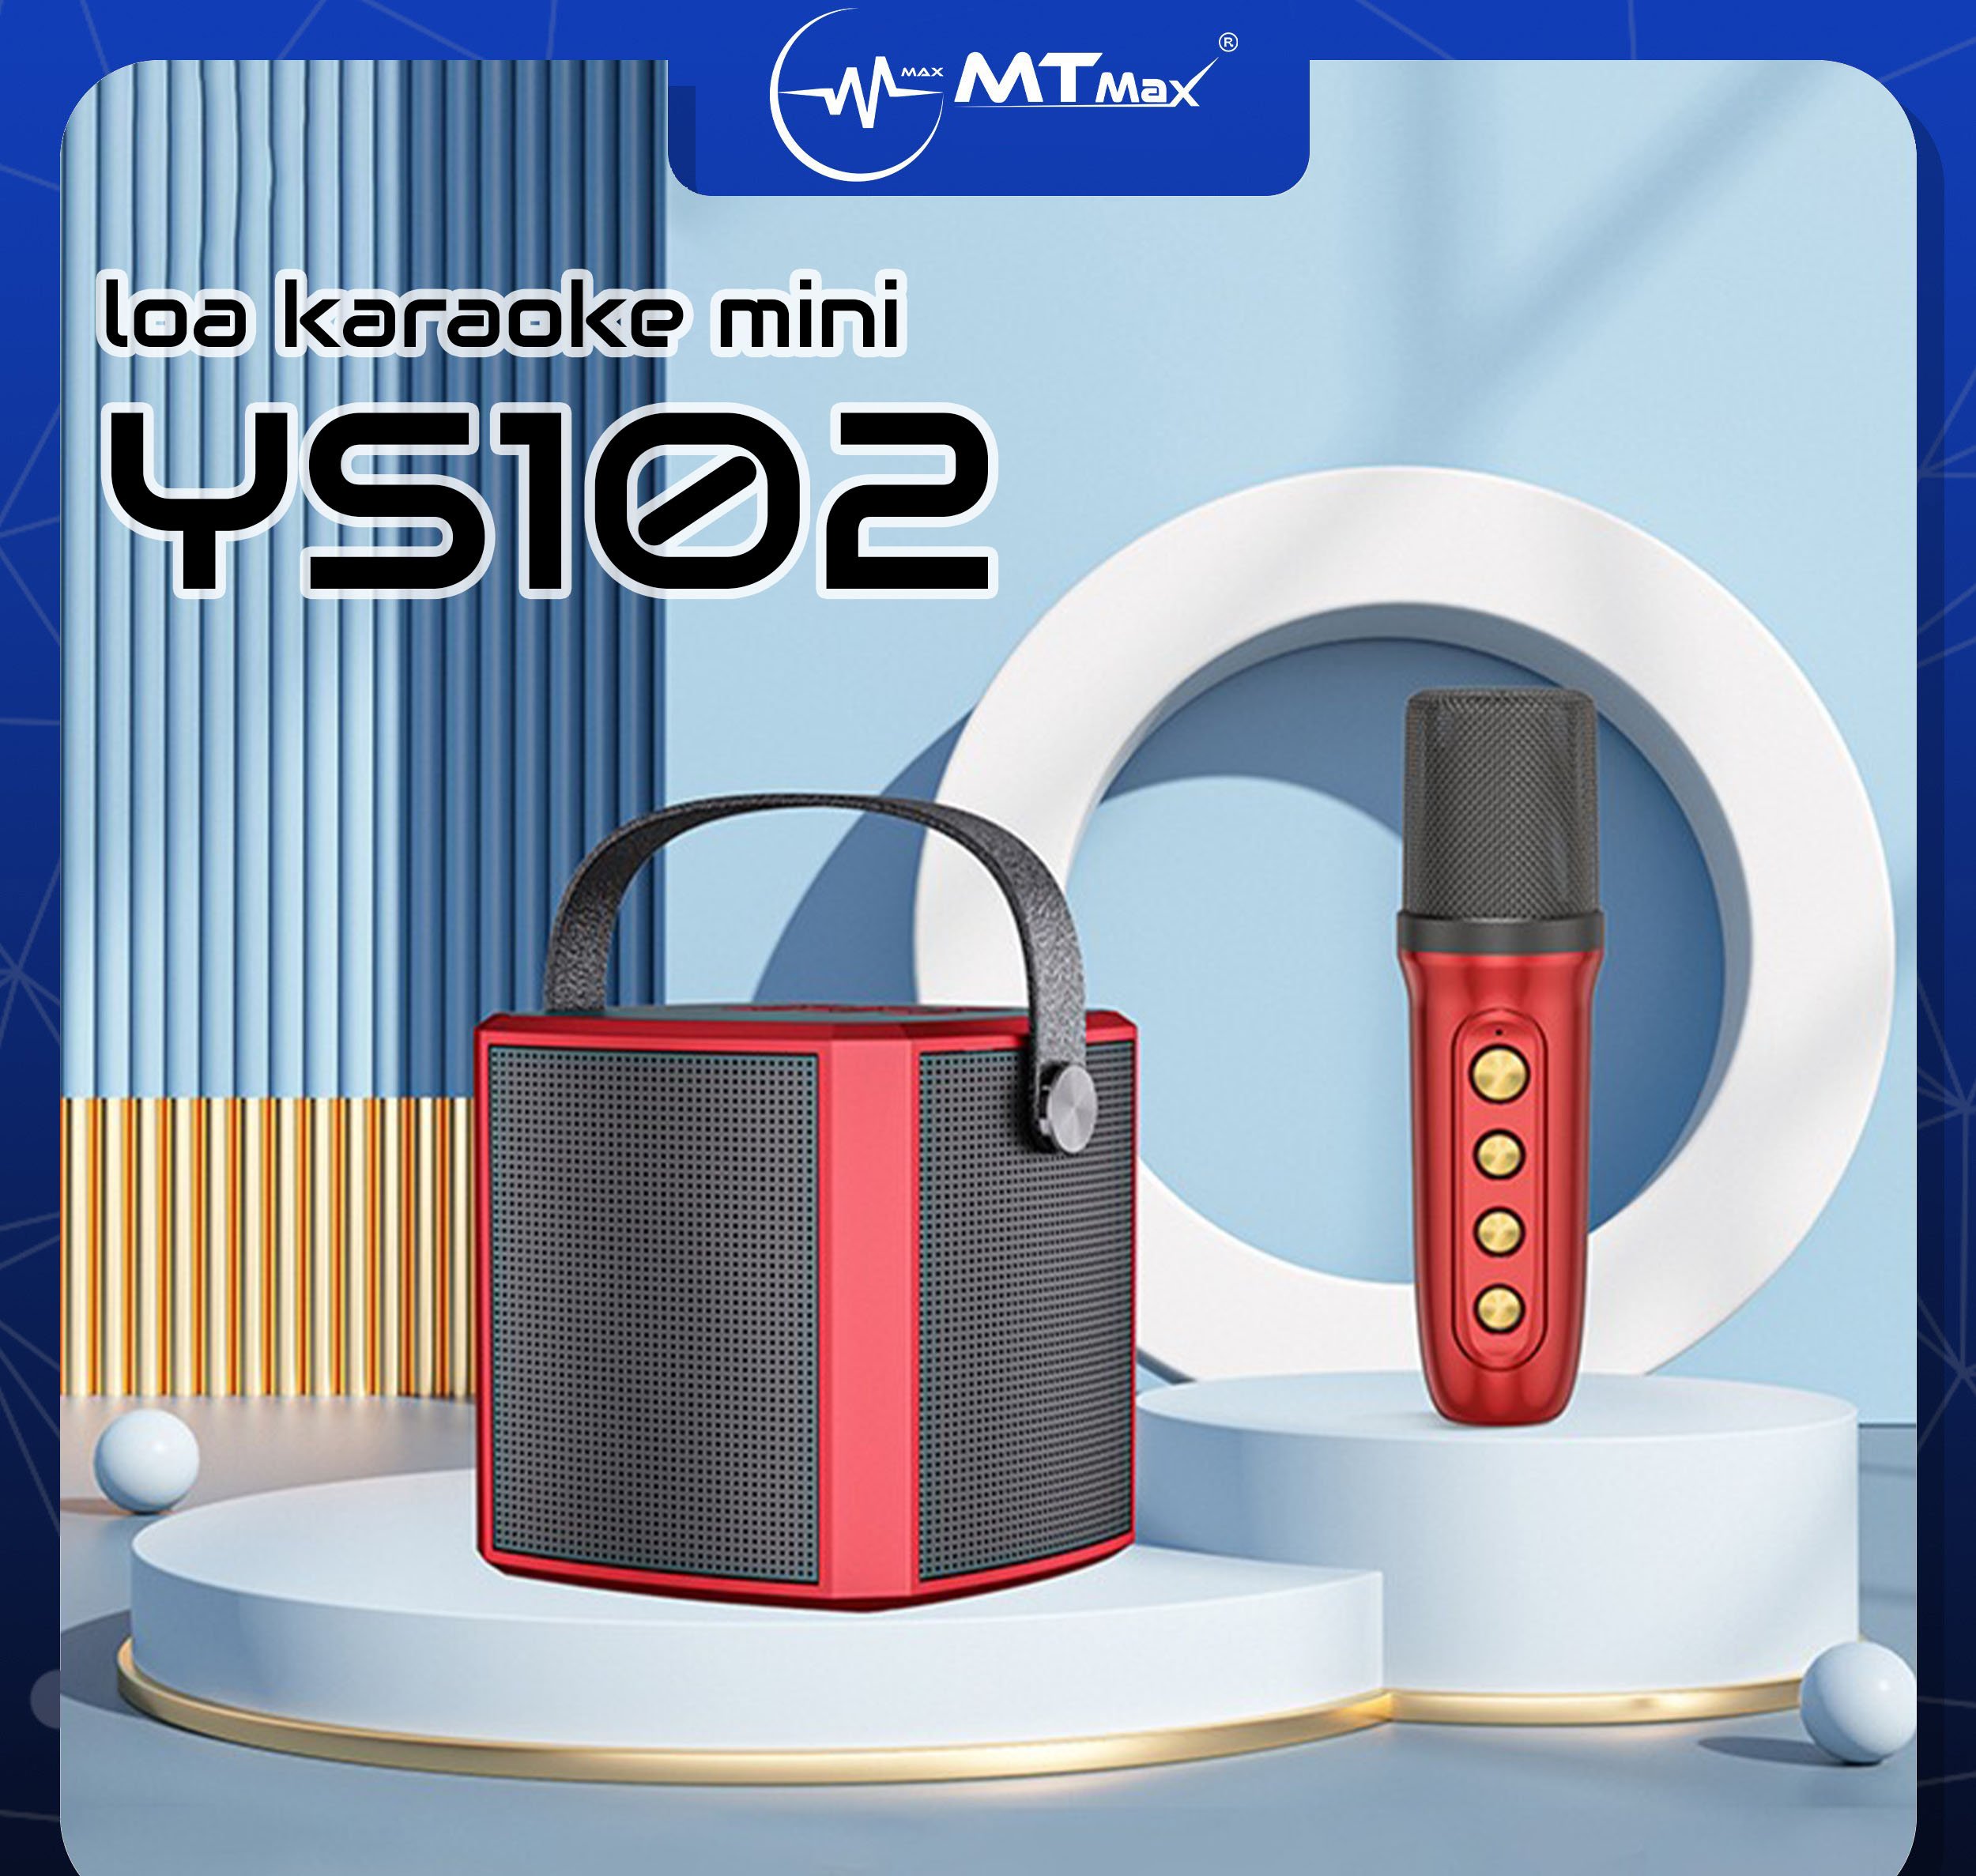 Loa bluetooth YS102 mang phong cách hiện đại vẻ ngoài tinh tế di động mini cầm tay riêng. Cùng với chất liệu vỏ được làm bằng nhữa ABS cao cấp, an toàn không độc hại. Thích hợp di chuyển, nghe nhạc karaoke gia đình, du lịch.